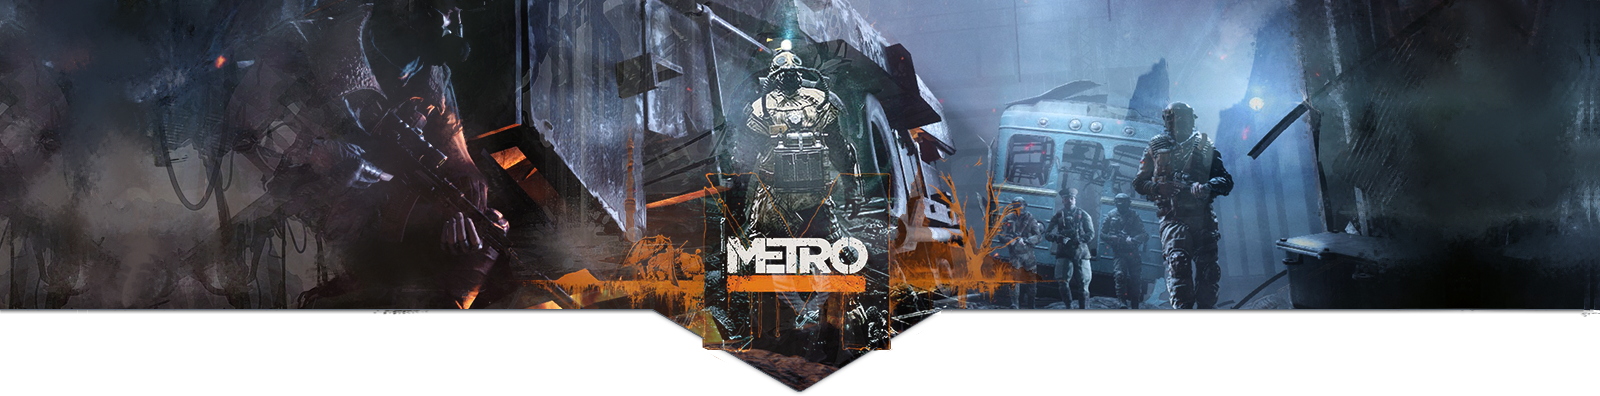 Metro 2045